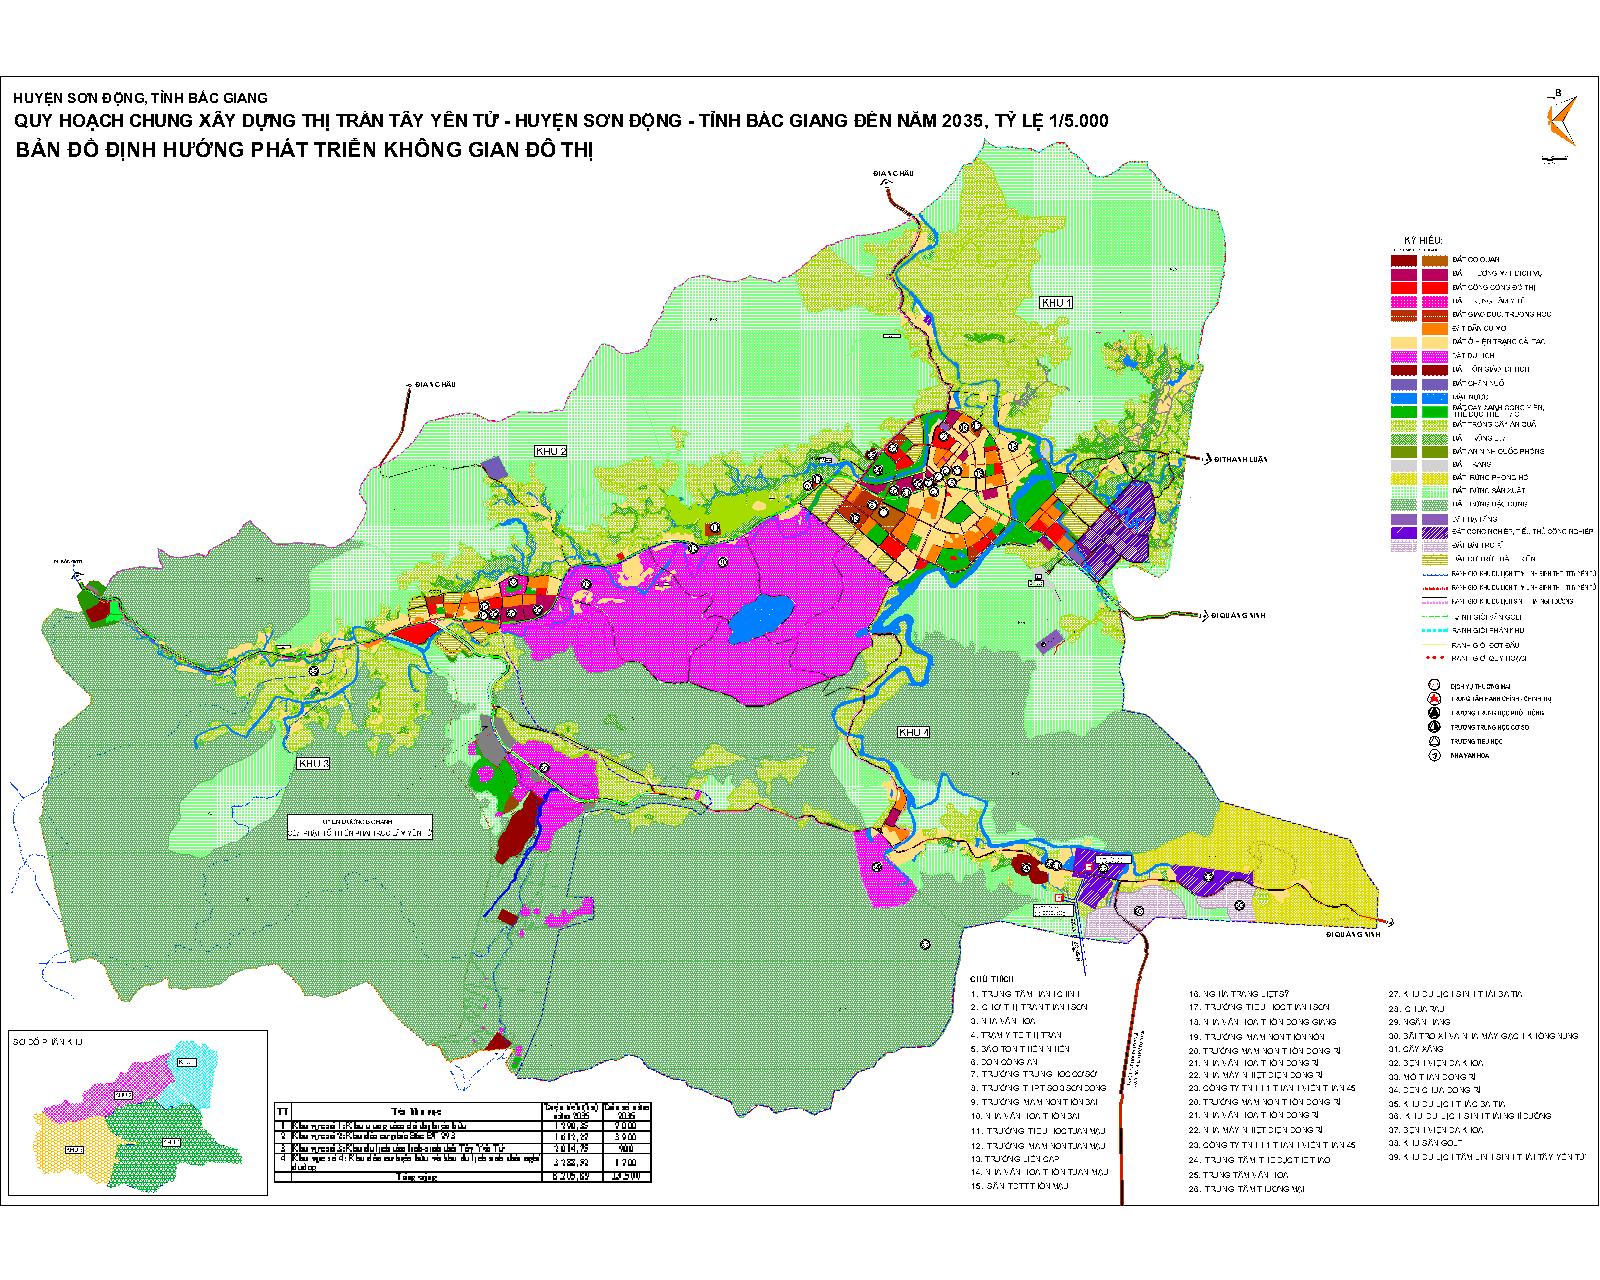 Bản đồ định hướng phát triển không gian huyện Sơn Động – Tỉnh Bắc Giang